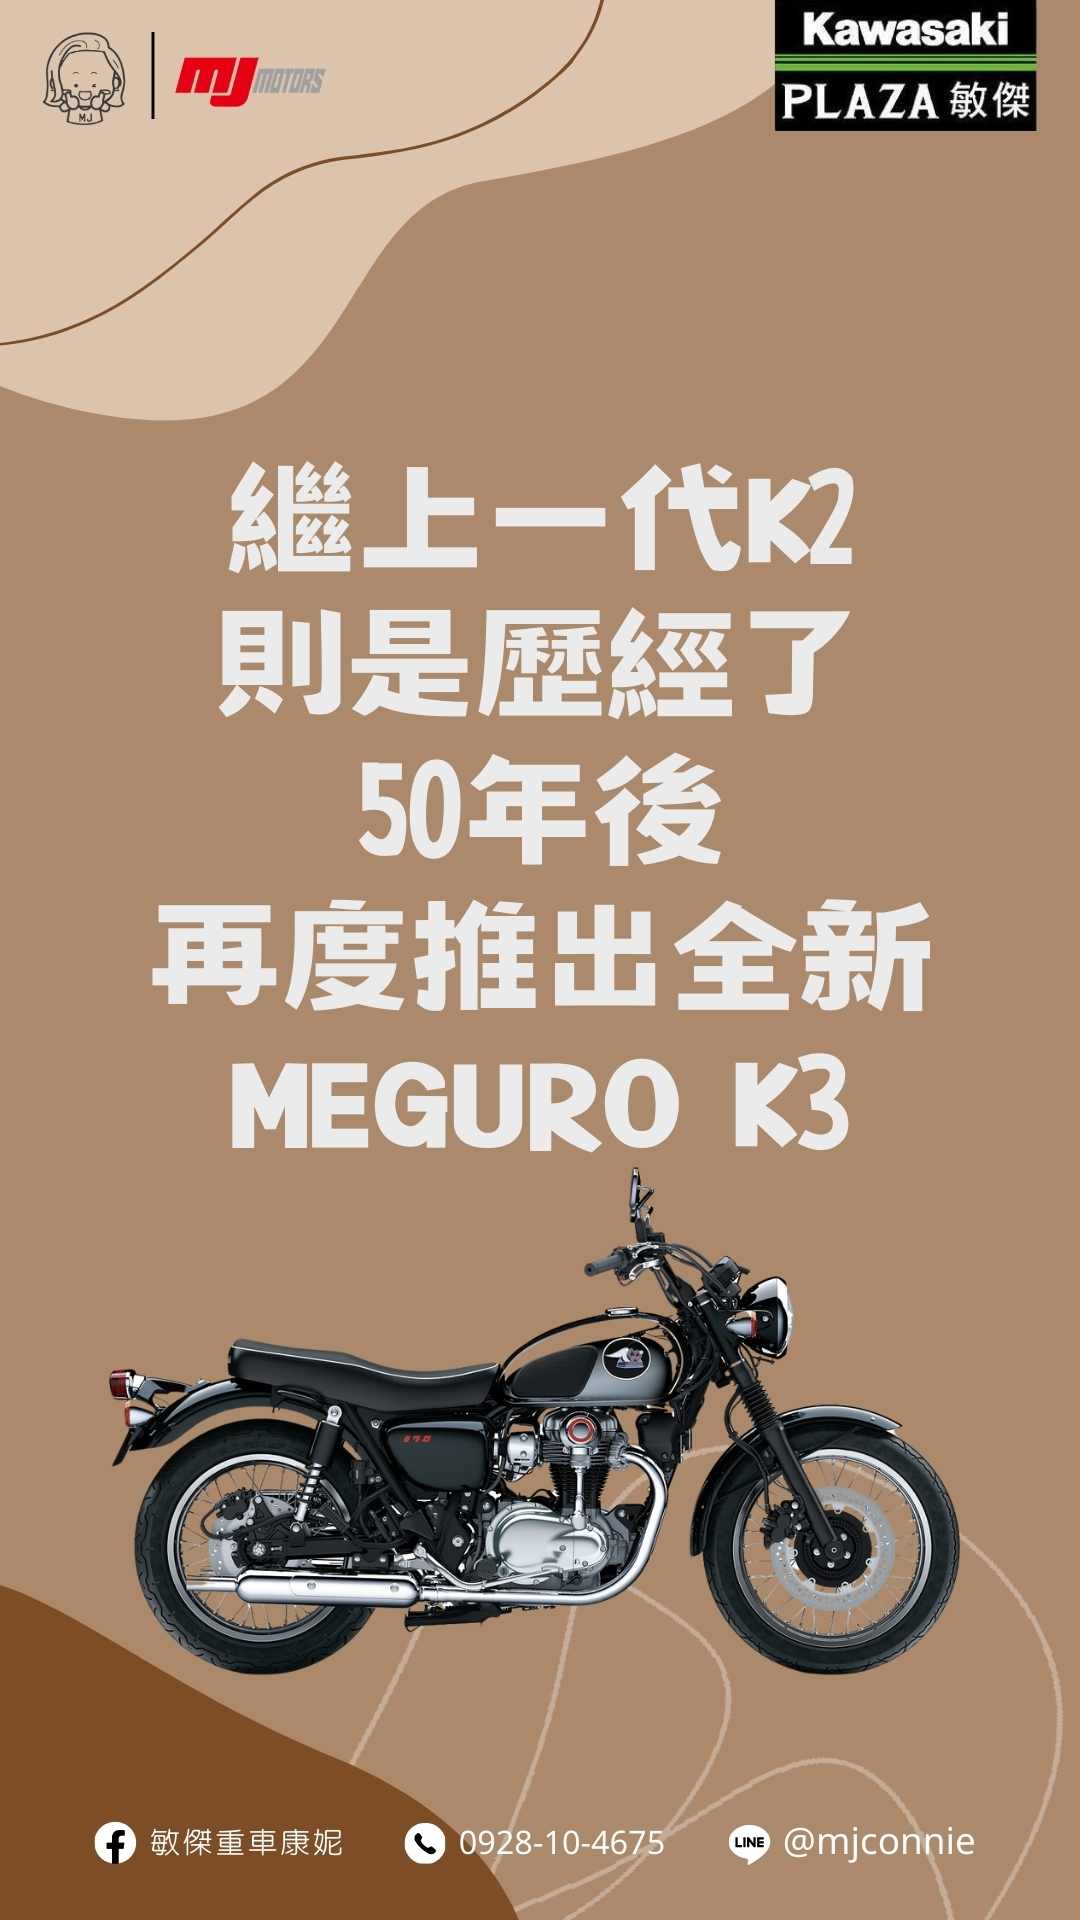 KAWASAKI W800新車出售中 『敏傑康妮』Kawasaki W800 Meguro K3 有歷史典故的車款 最值得收藏 現在就聯絡康妮 帶她回家 | 敏傑車業資深銷售專員 康妮 Connie